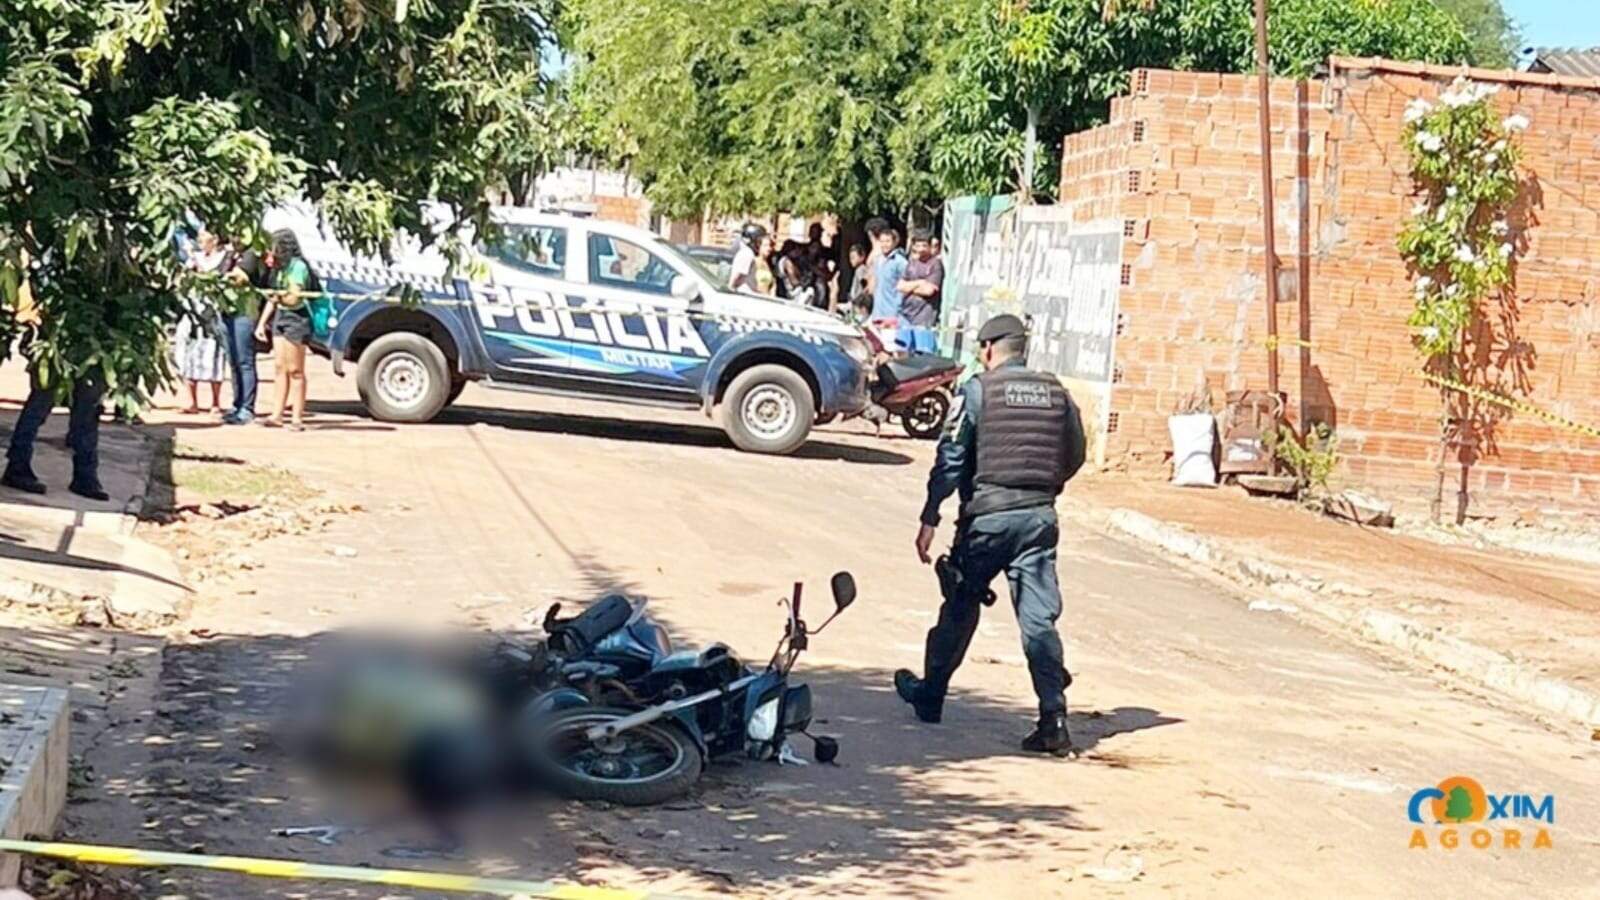 Agiota morre após ser baleado por atirador em motocicleta em Coxim